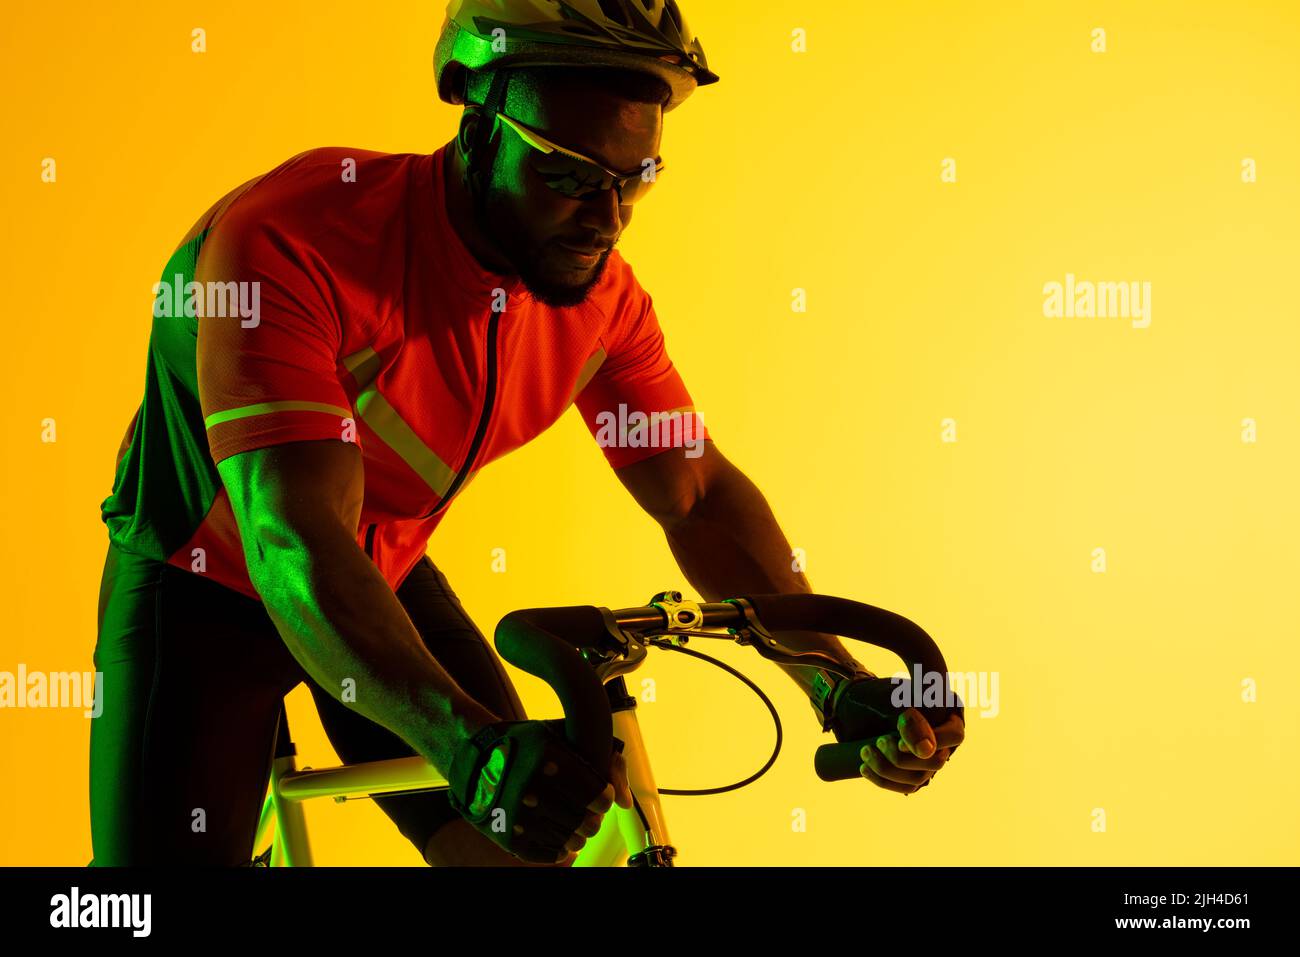 Immagine di ciclista maschile afroamericana in bicicletta con illuminazione gialla Foto Stock